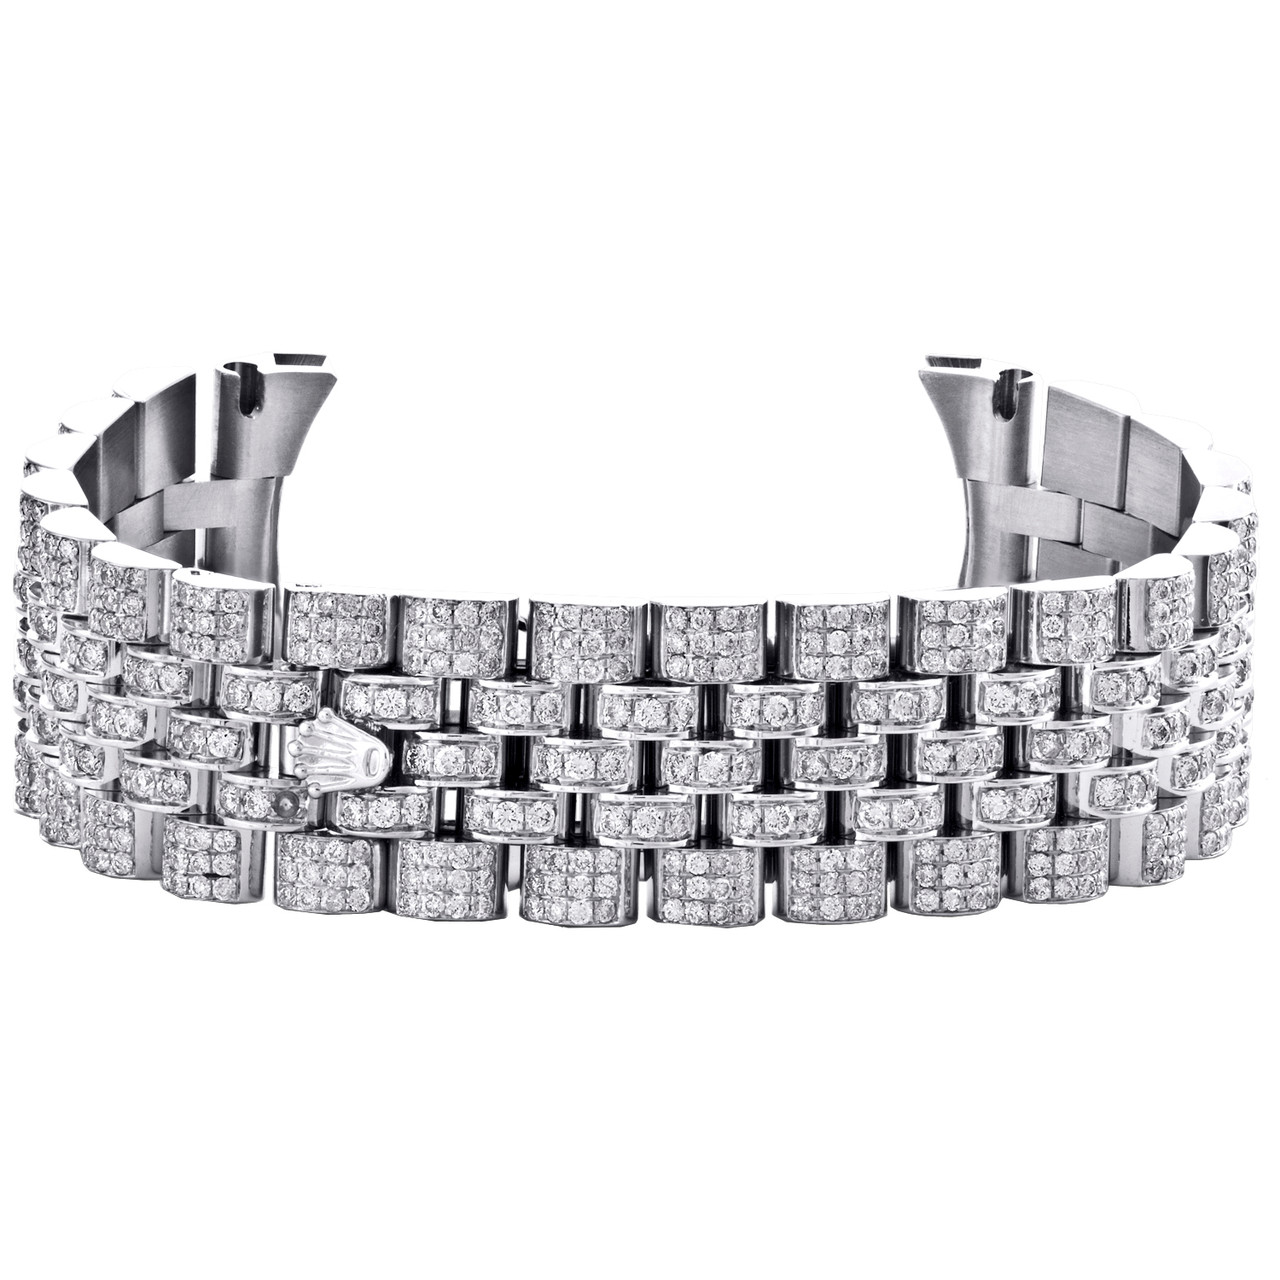 Rolex Stainless Steel Jubilee OEM Watch Bracelet